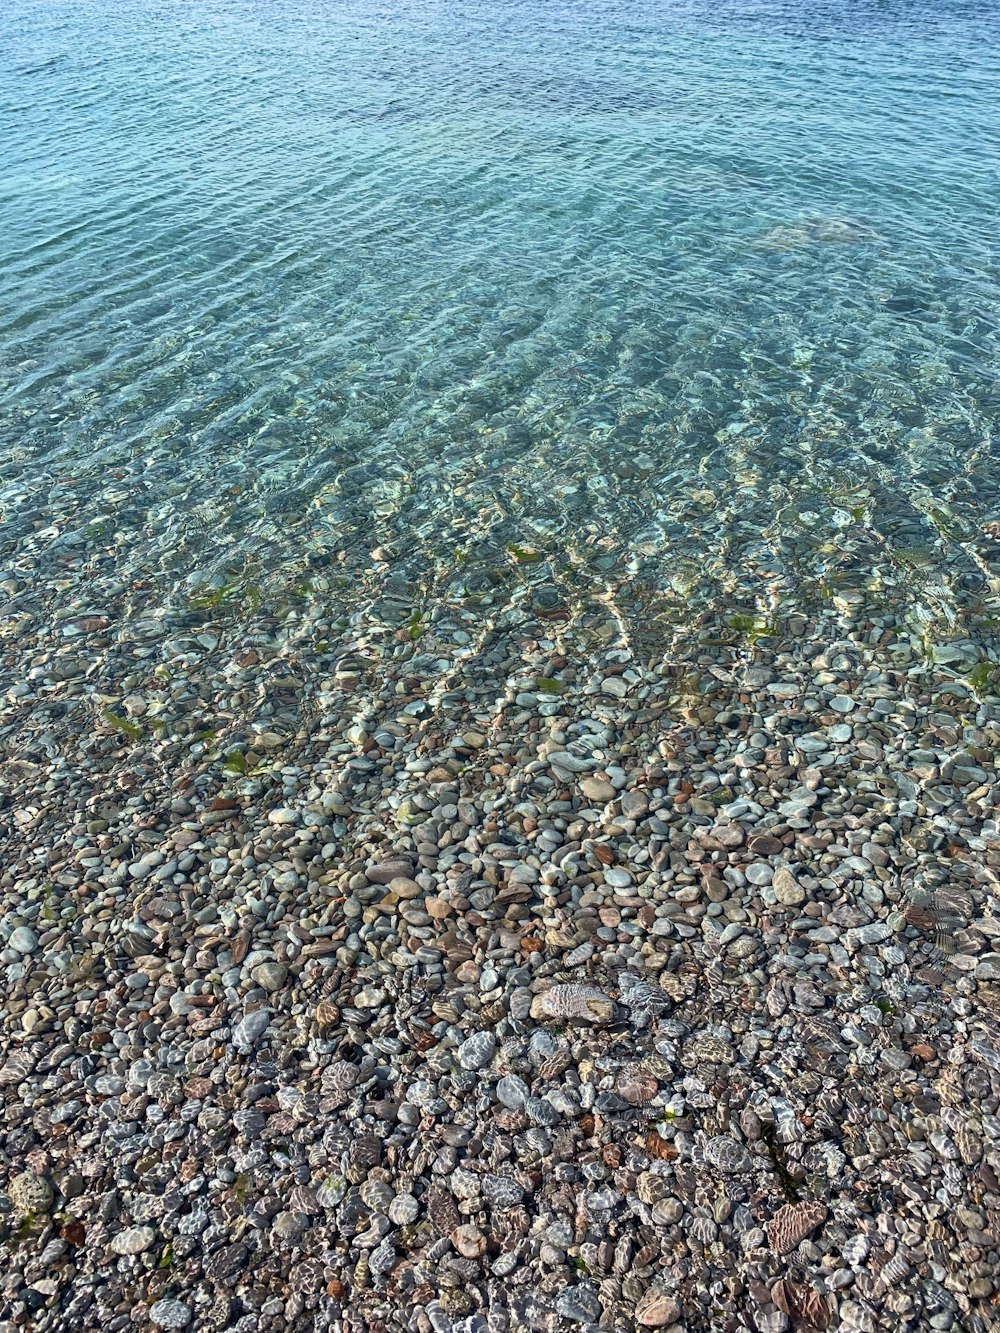 a body of water that has rocks in it